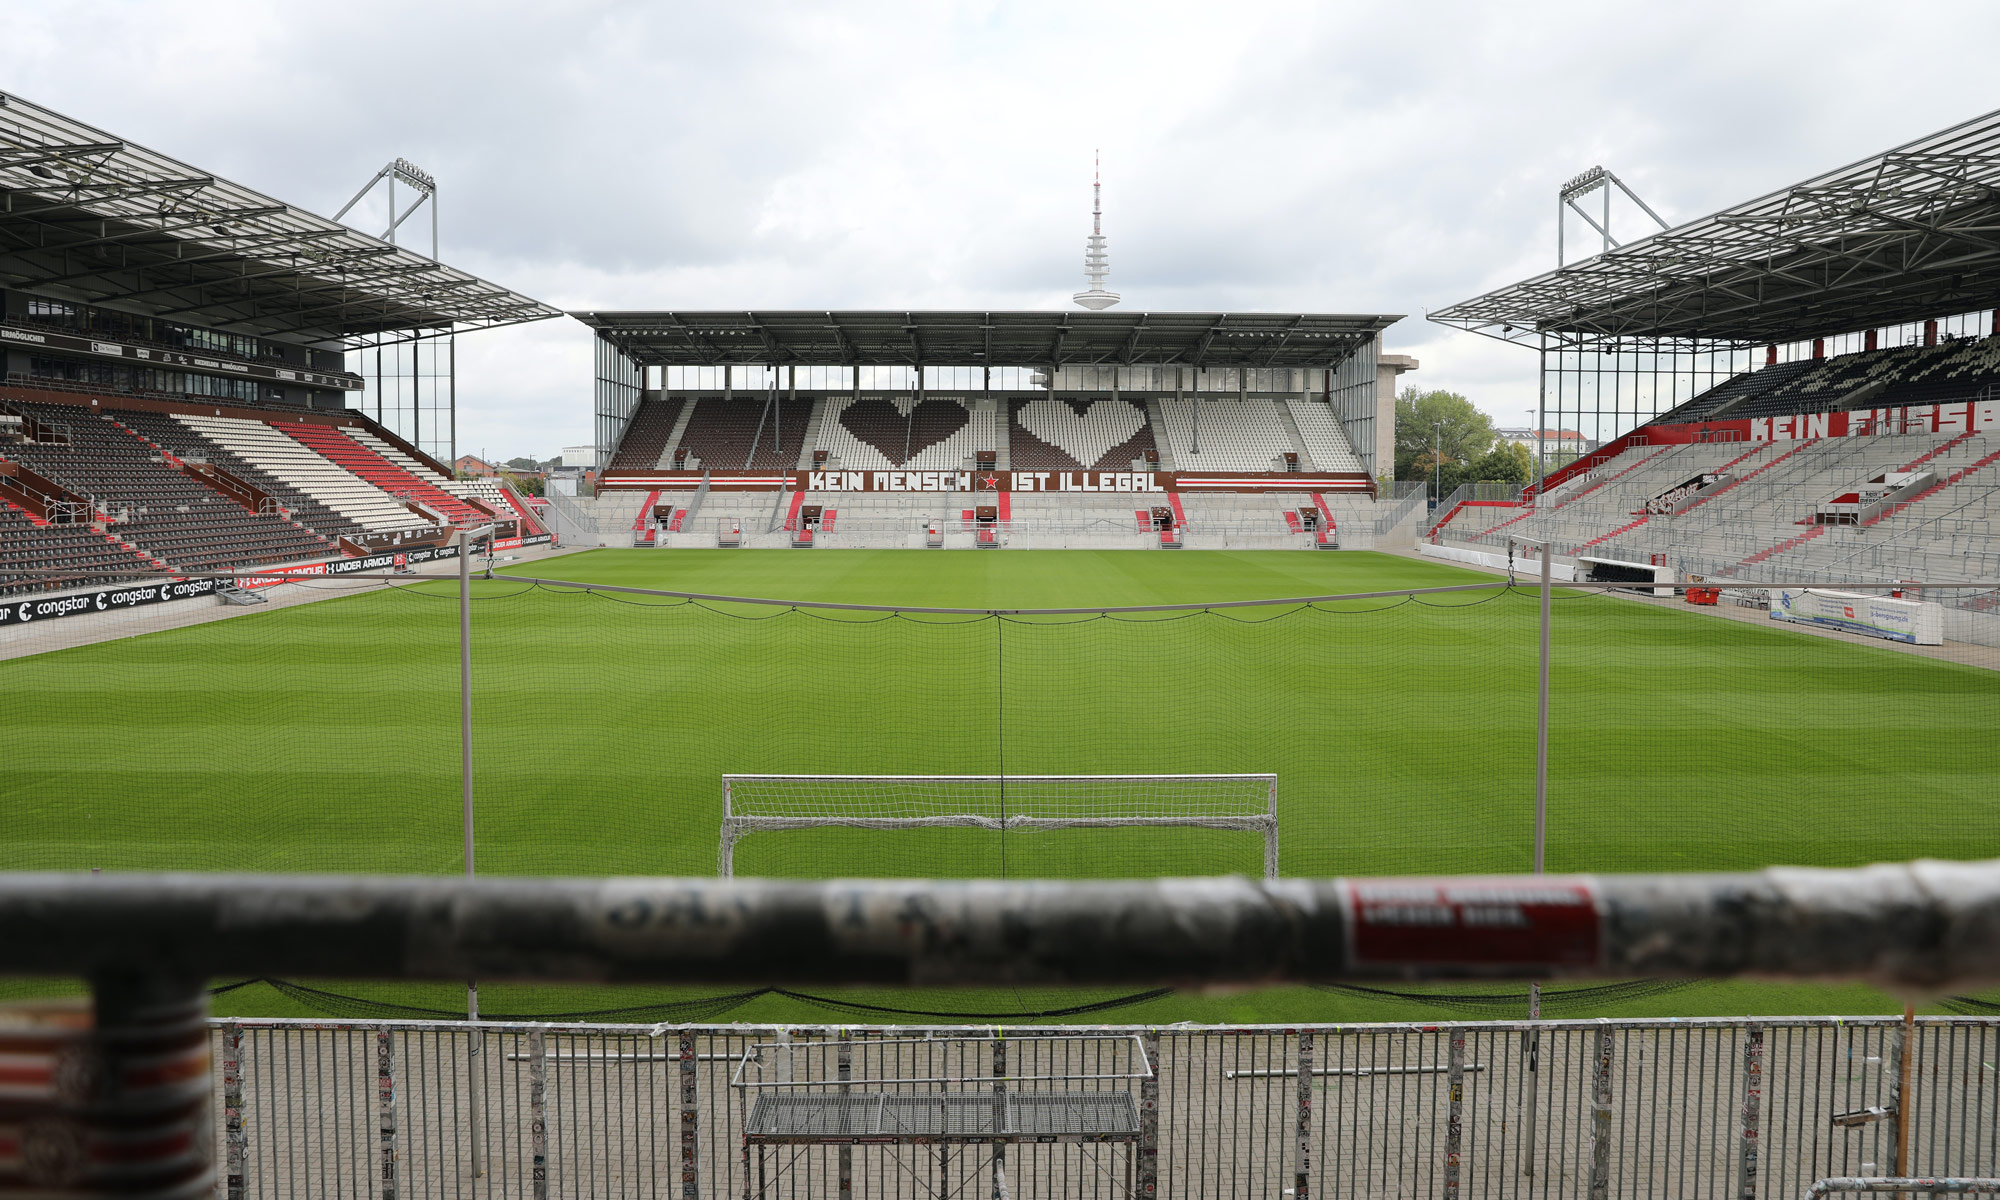 Millerntor-Stadion auf St. Pauli, Hamburg